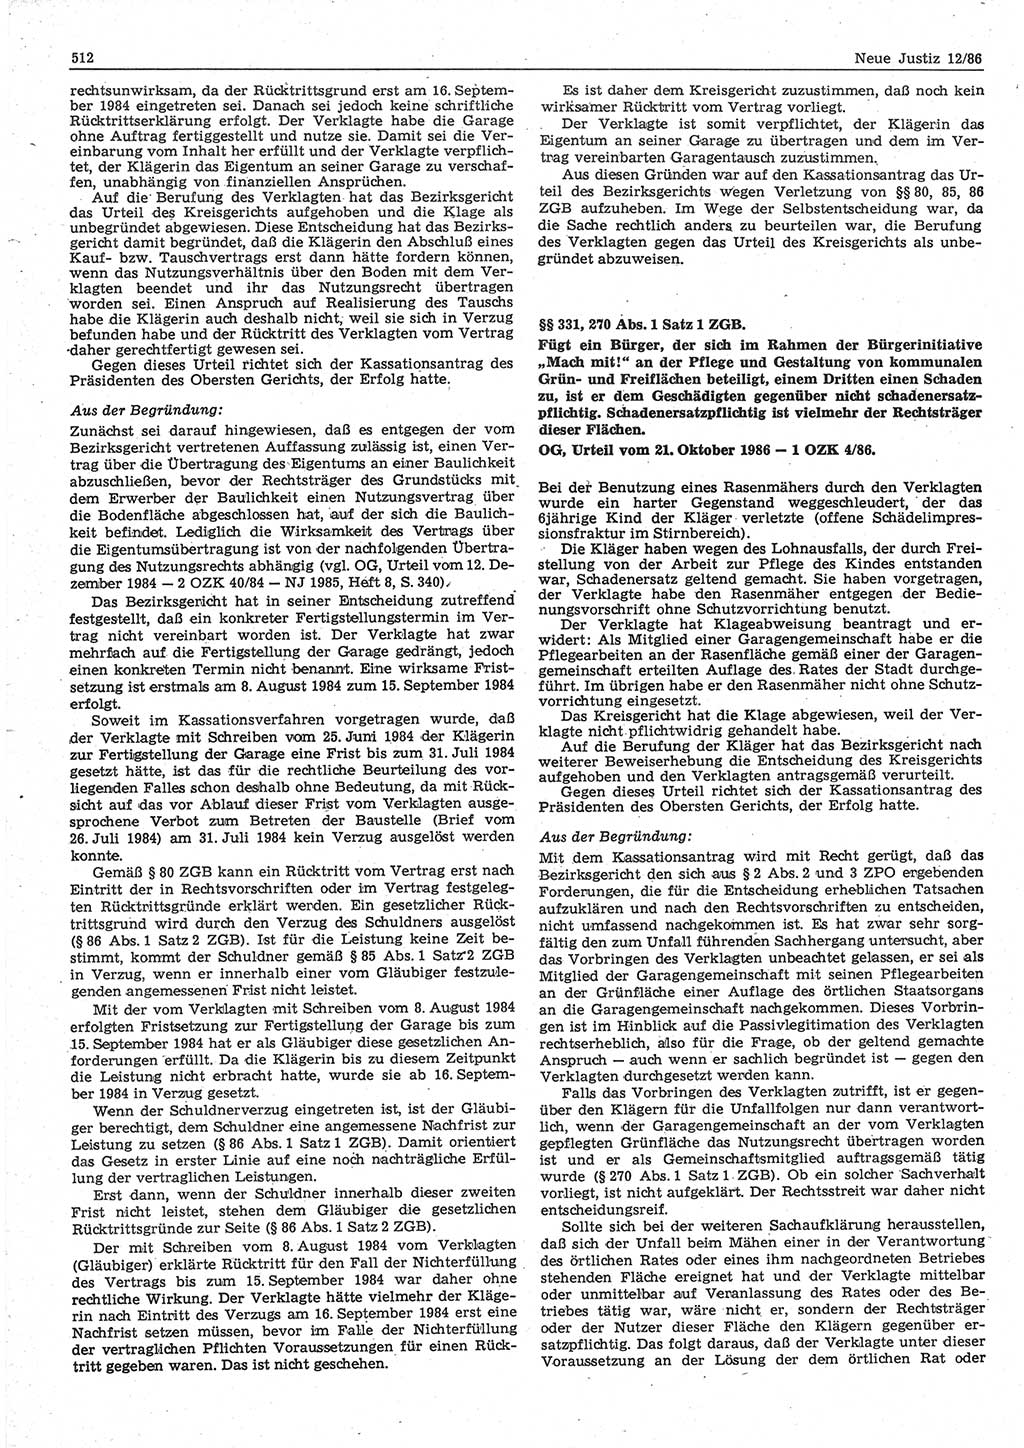 Neue Justiz (NJ), Zeitschrift für sozialistisches Recht und Gesetzlichkeit [Deutsche Demokratische Republik (DDR)], 40. Jahrgang 1986, Seite 512 (NJ DDR 1986, S. 512)